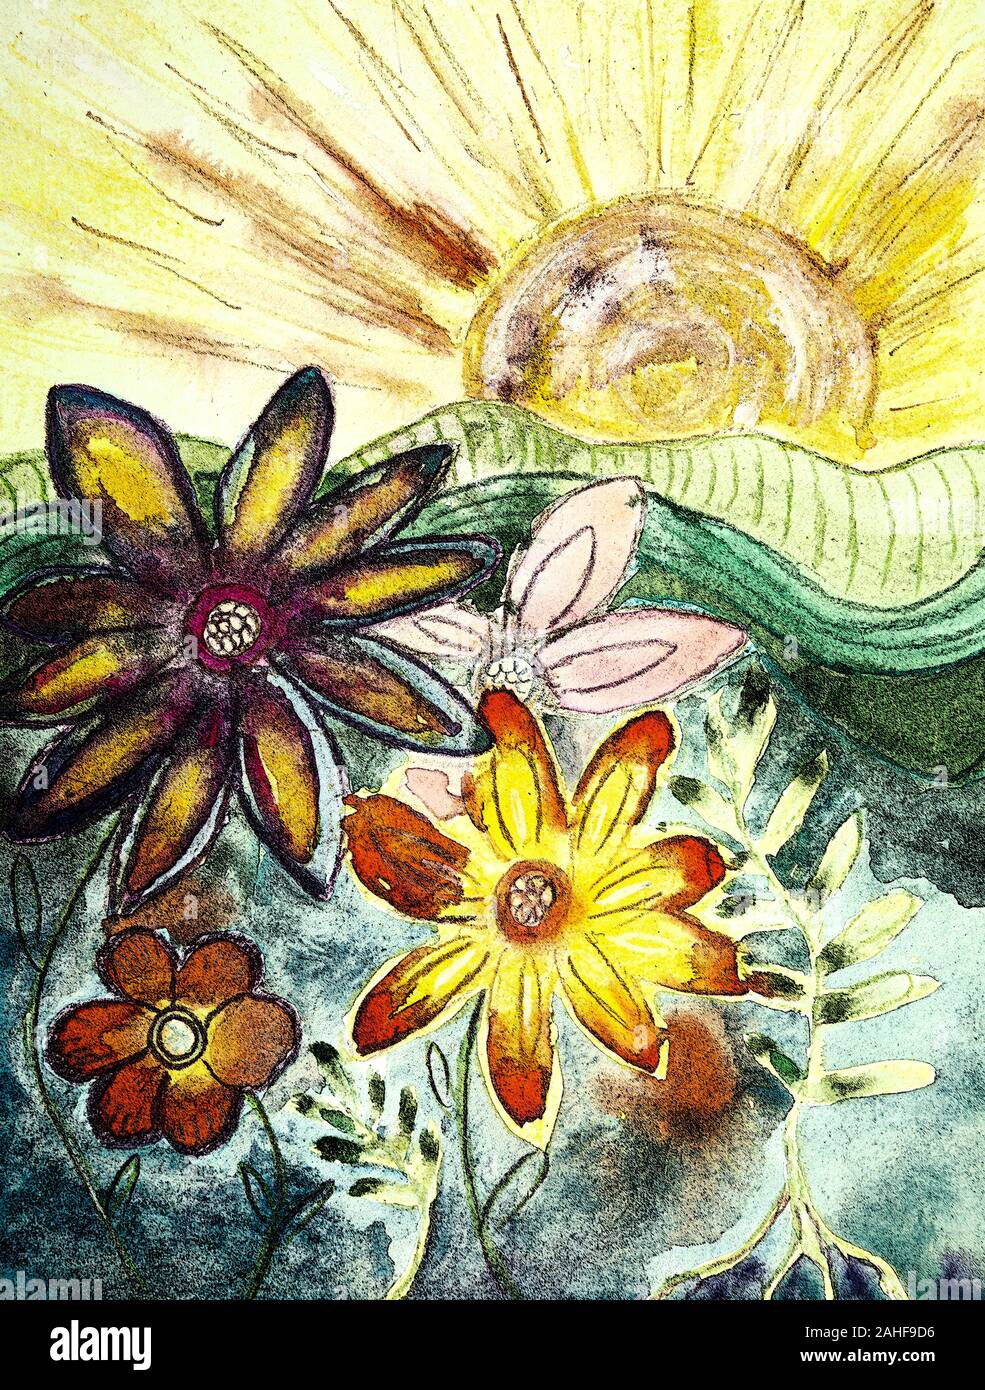 Fresque de fleurs hippie au soleil. La technique du badigeonnage près des bords donne un effet de flou en raison de la modification de la rugosité de la p Banque D'Images